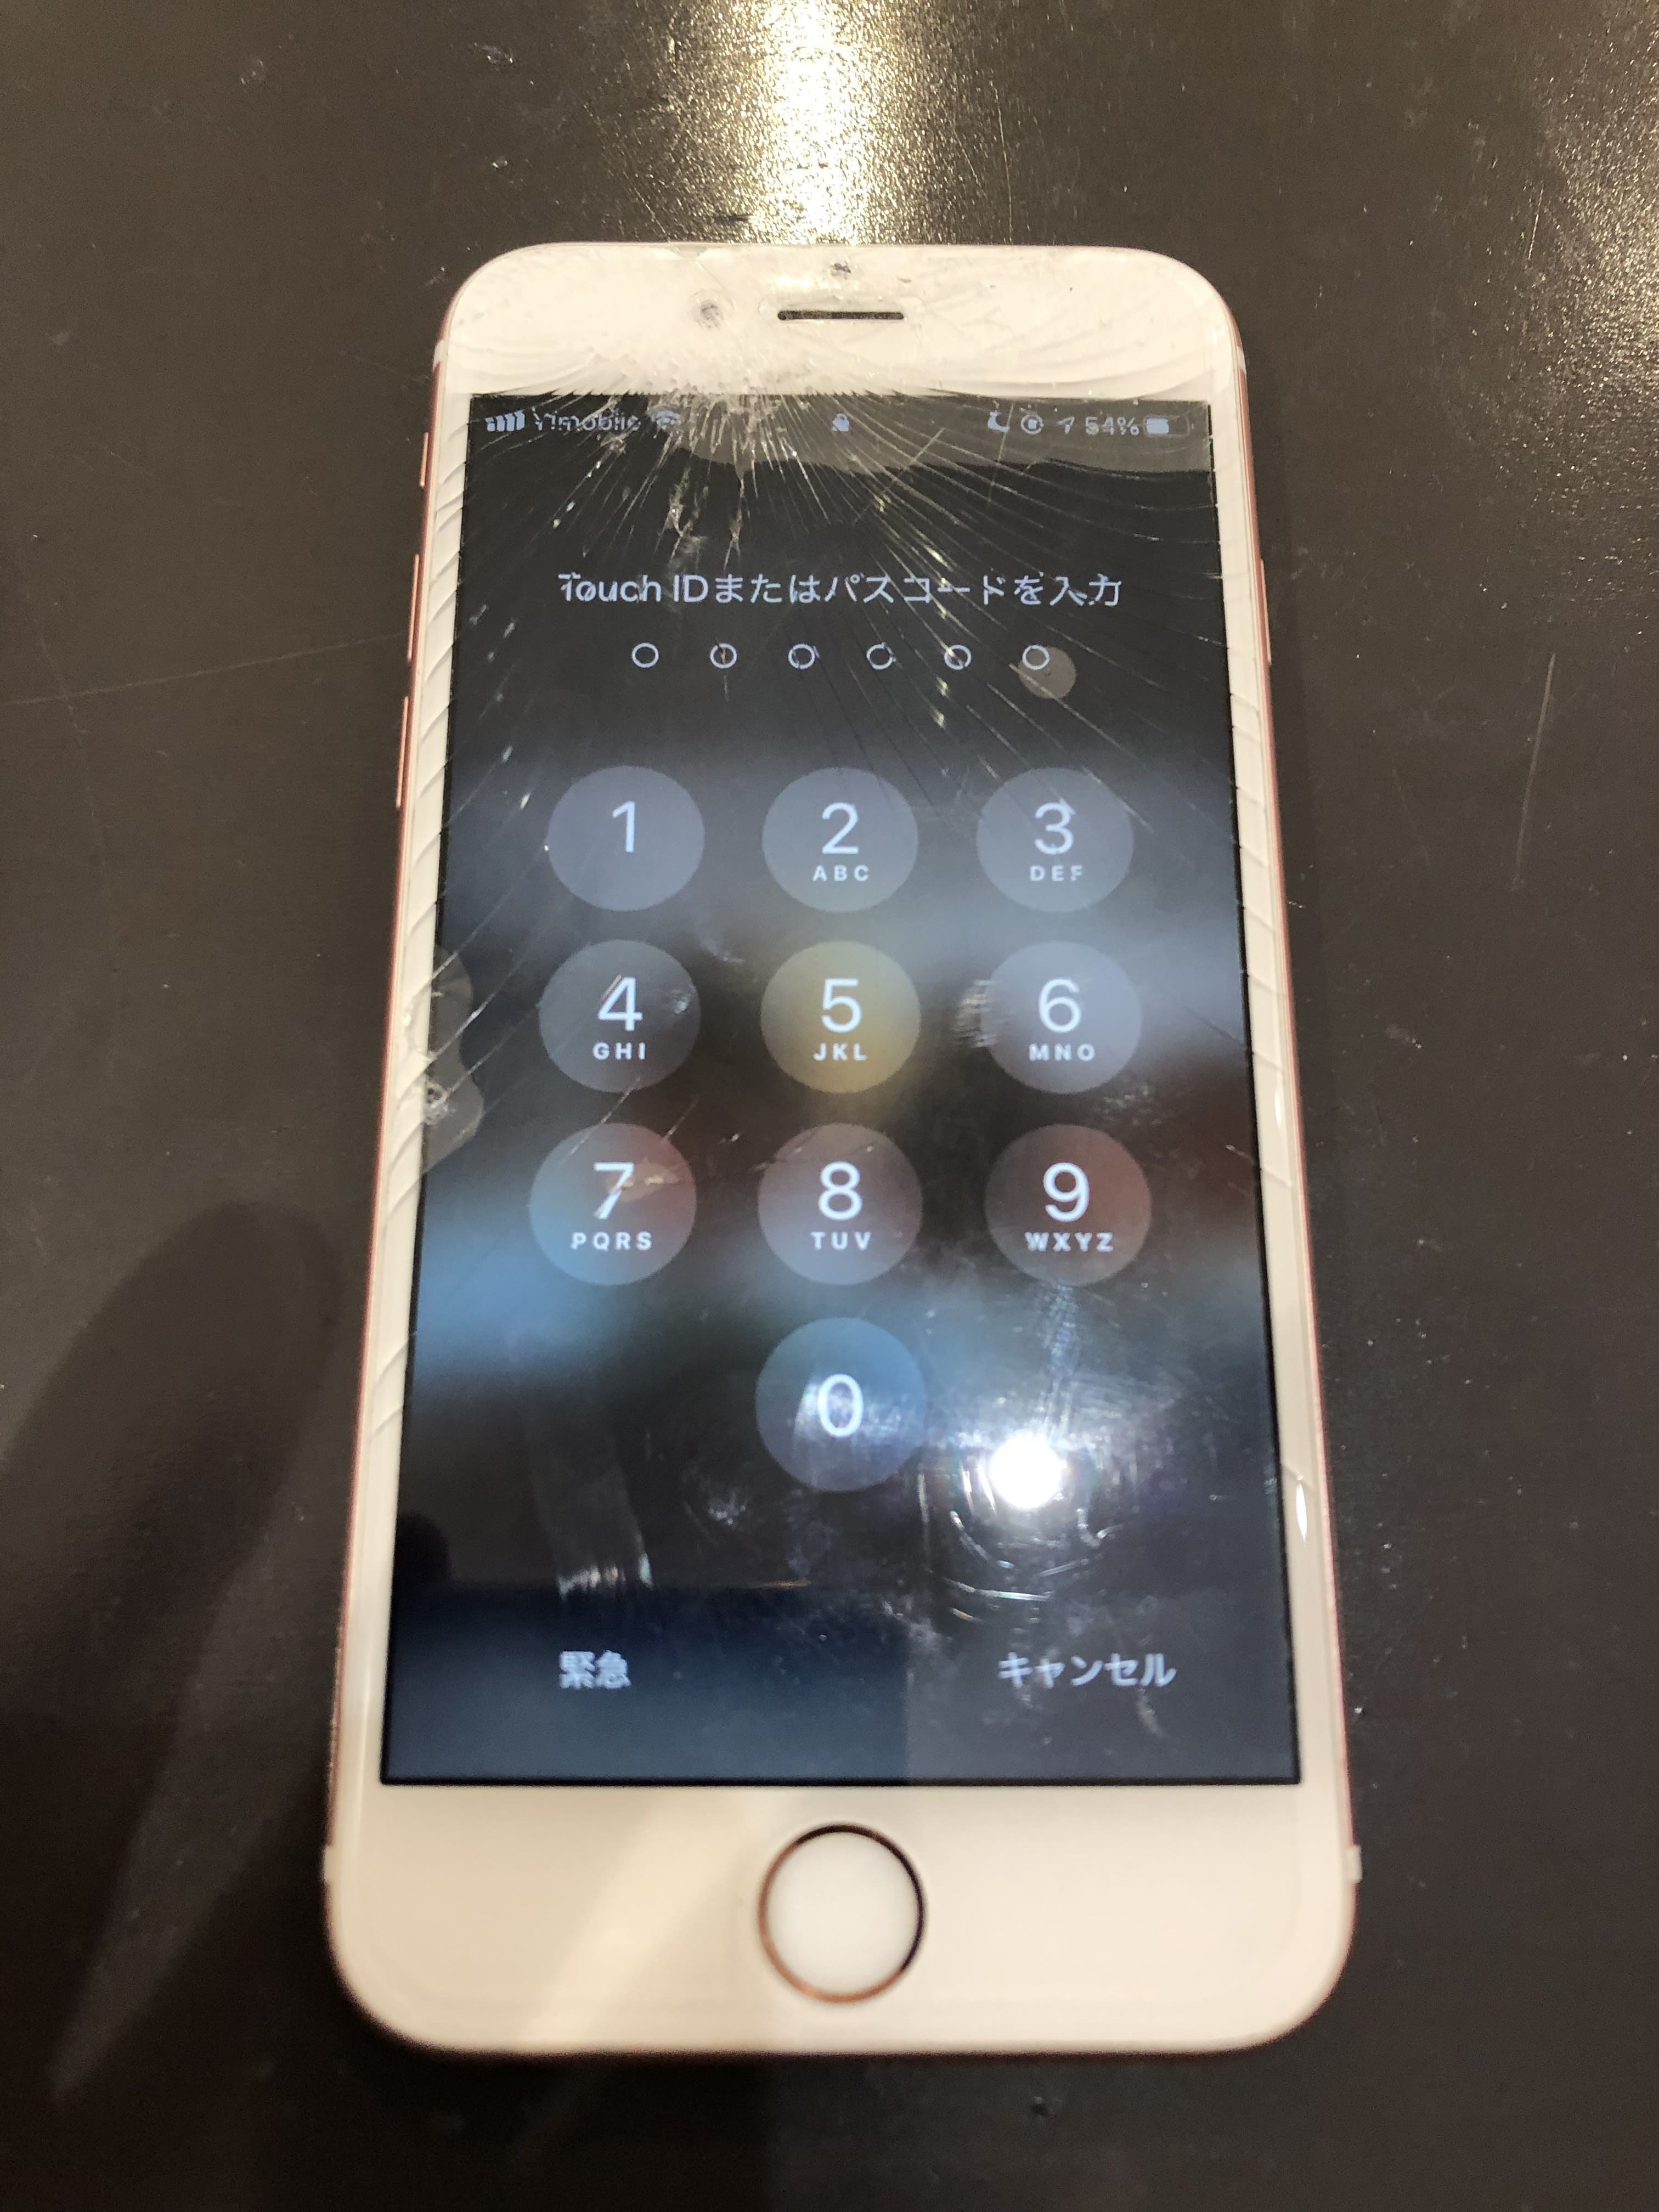 の パス の を コード ほか 入力 iphone 画面が壊れた状態でiPhoneのロックを解除する4つの方法[2021更新]